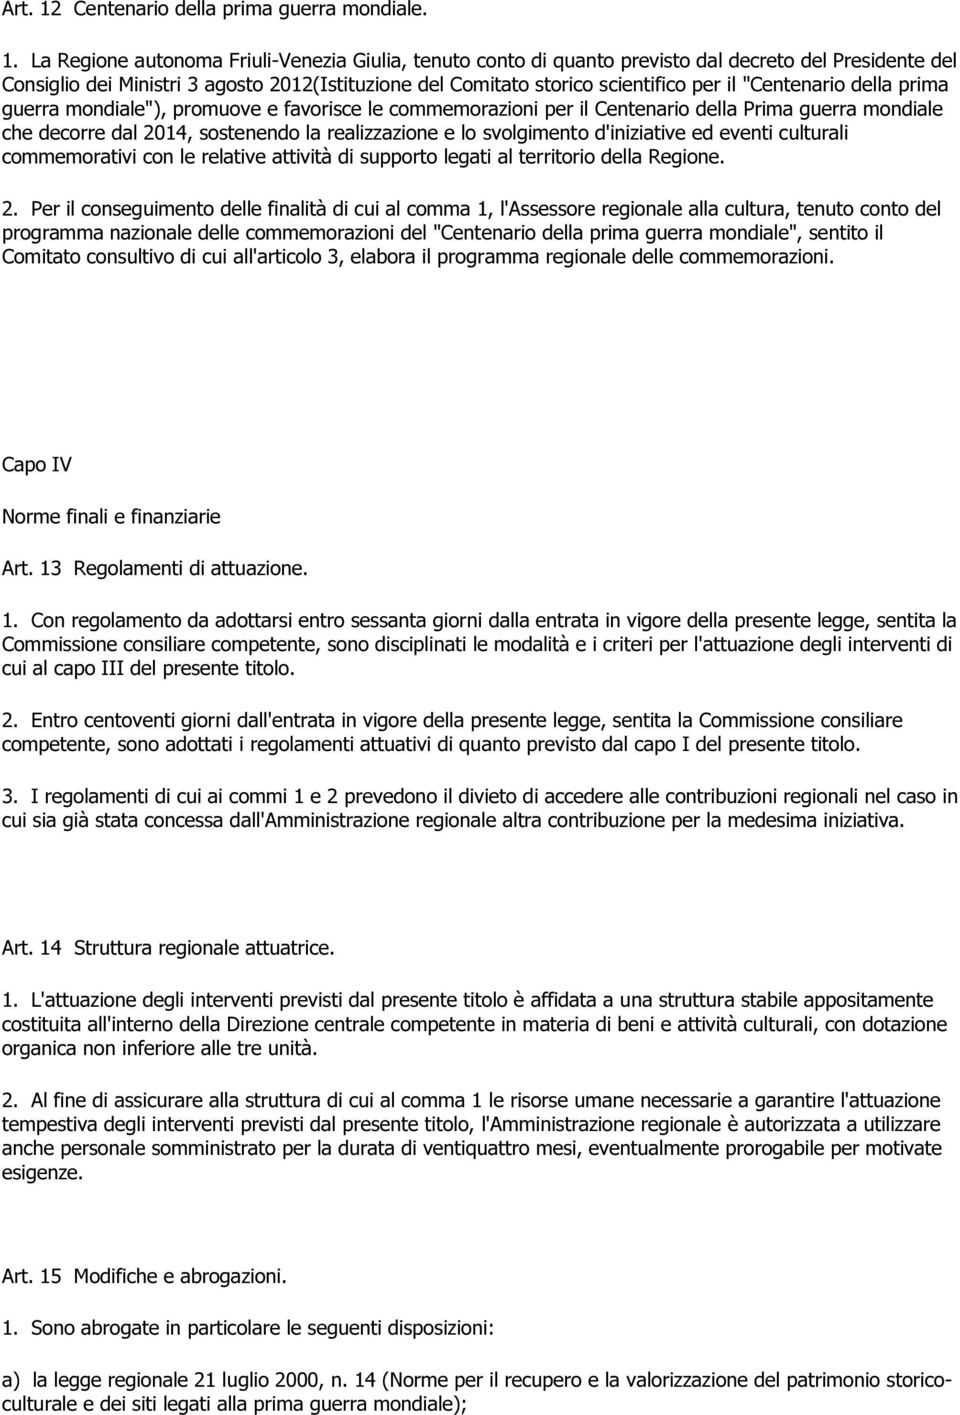 La Regione autonoma Friuli-Venezia Giulia, tenuto conto di quanto previsto dal decreto del Presidente del Consiglio dei Ministri 3 agosto 2012(Istituzione del Comitato storico scientifico per il